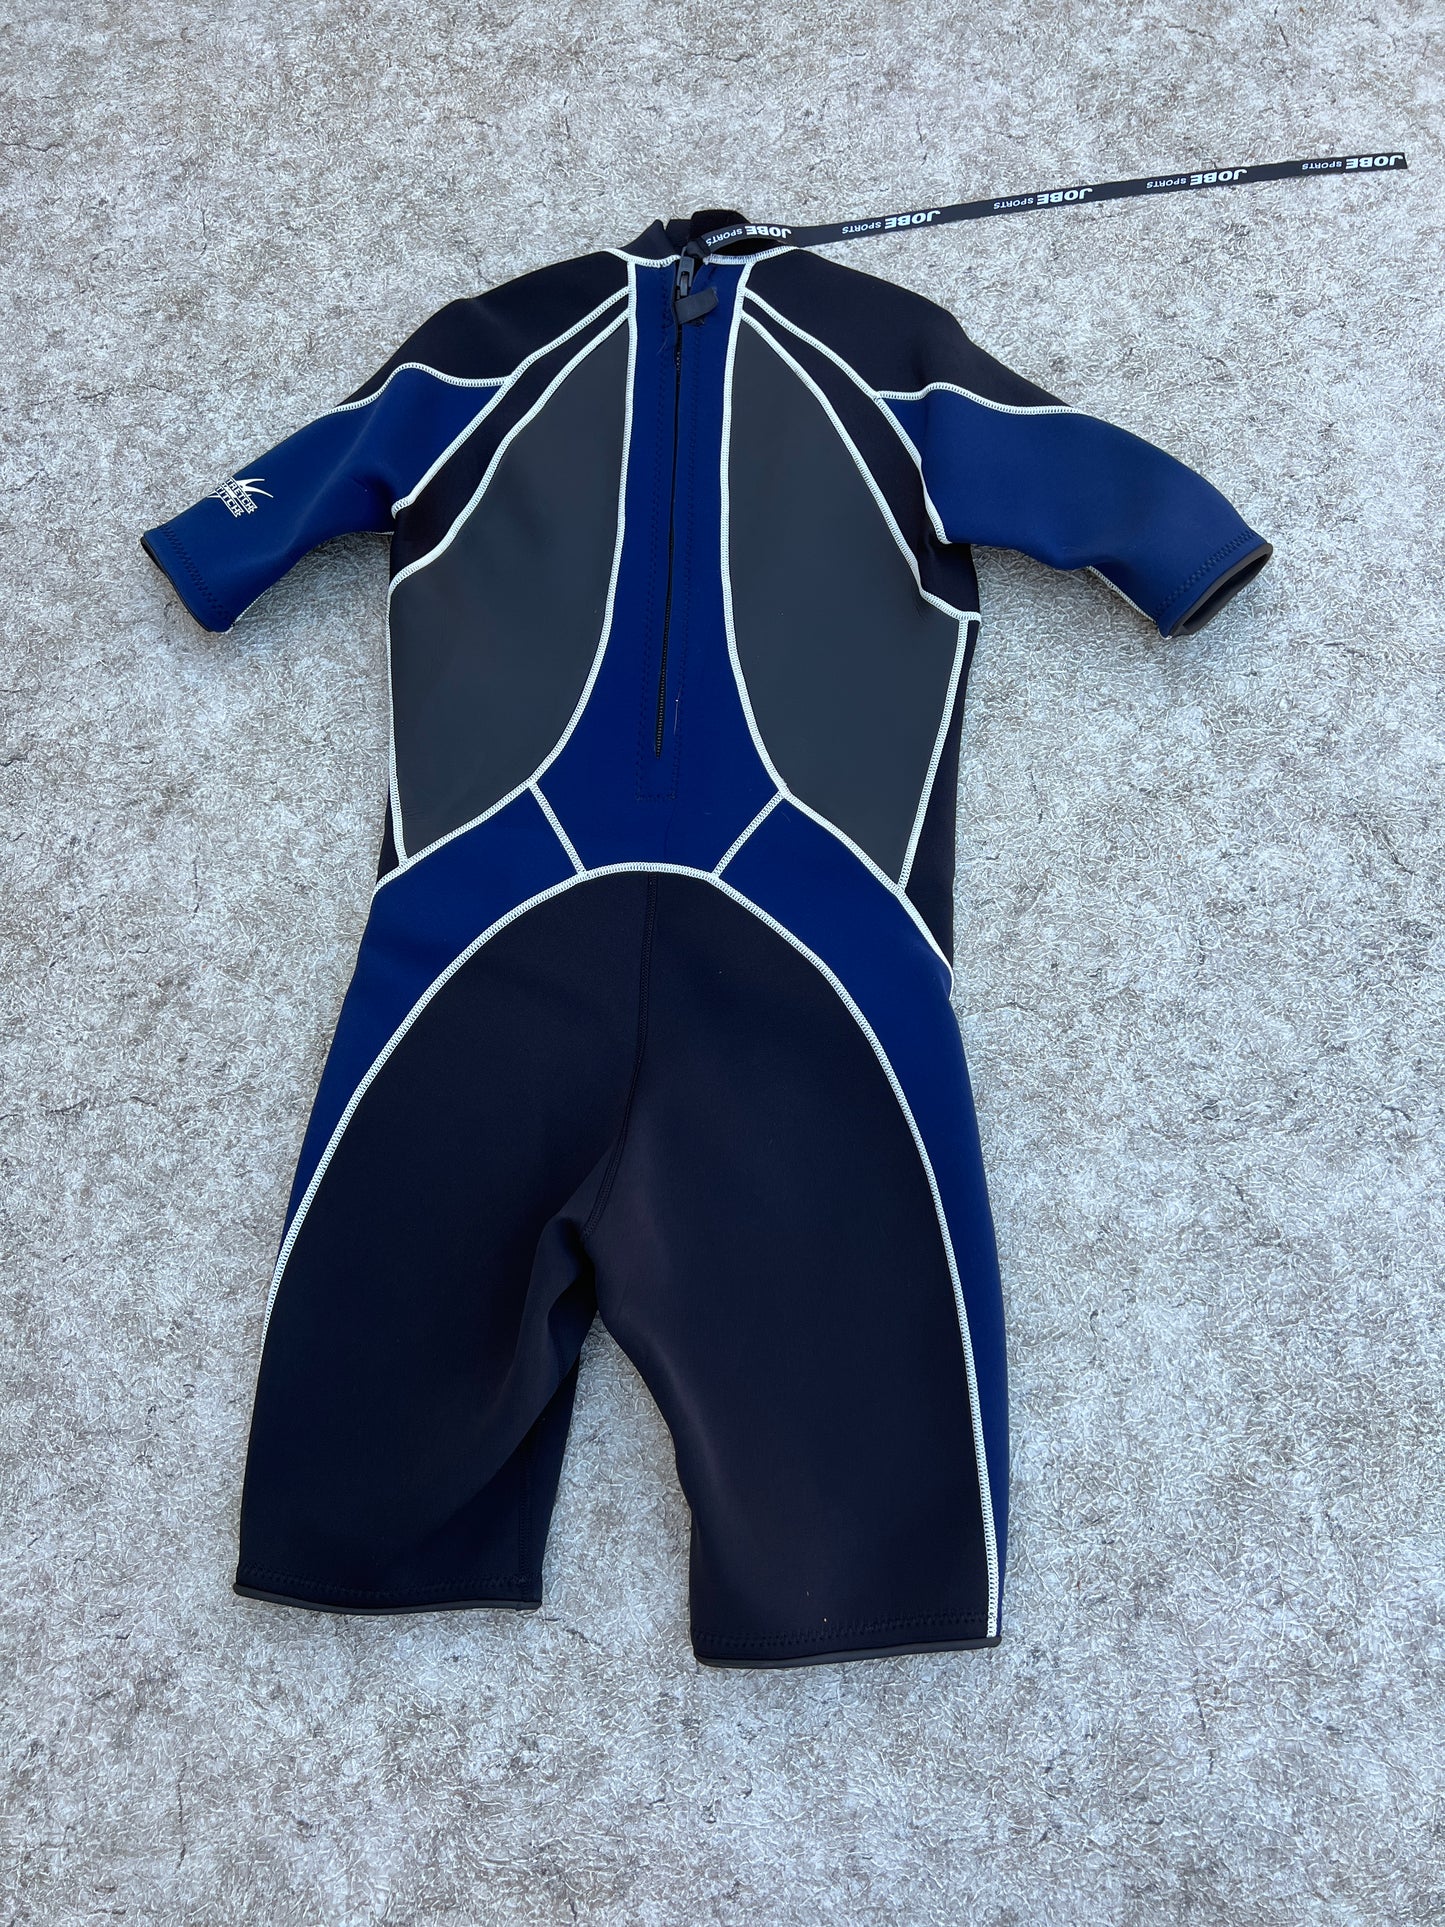 Wetsuit Men's Size Large Jobe 2-3mm Black Blue Grey Excellent